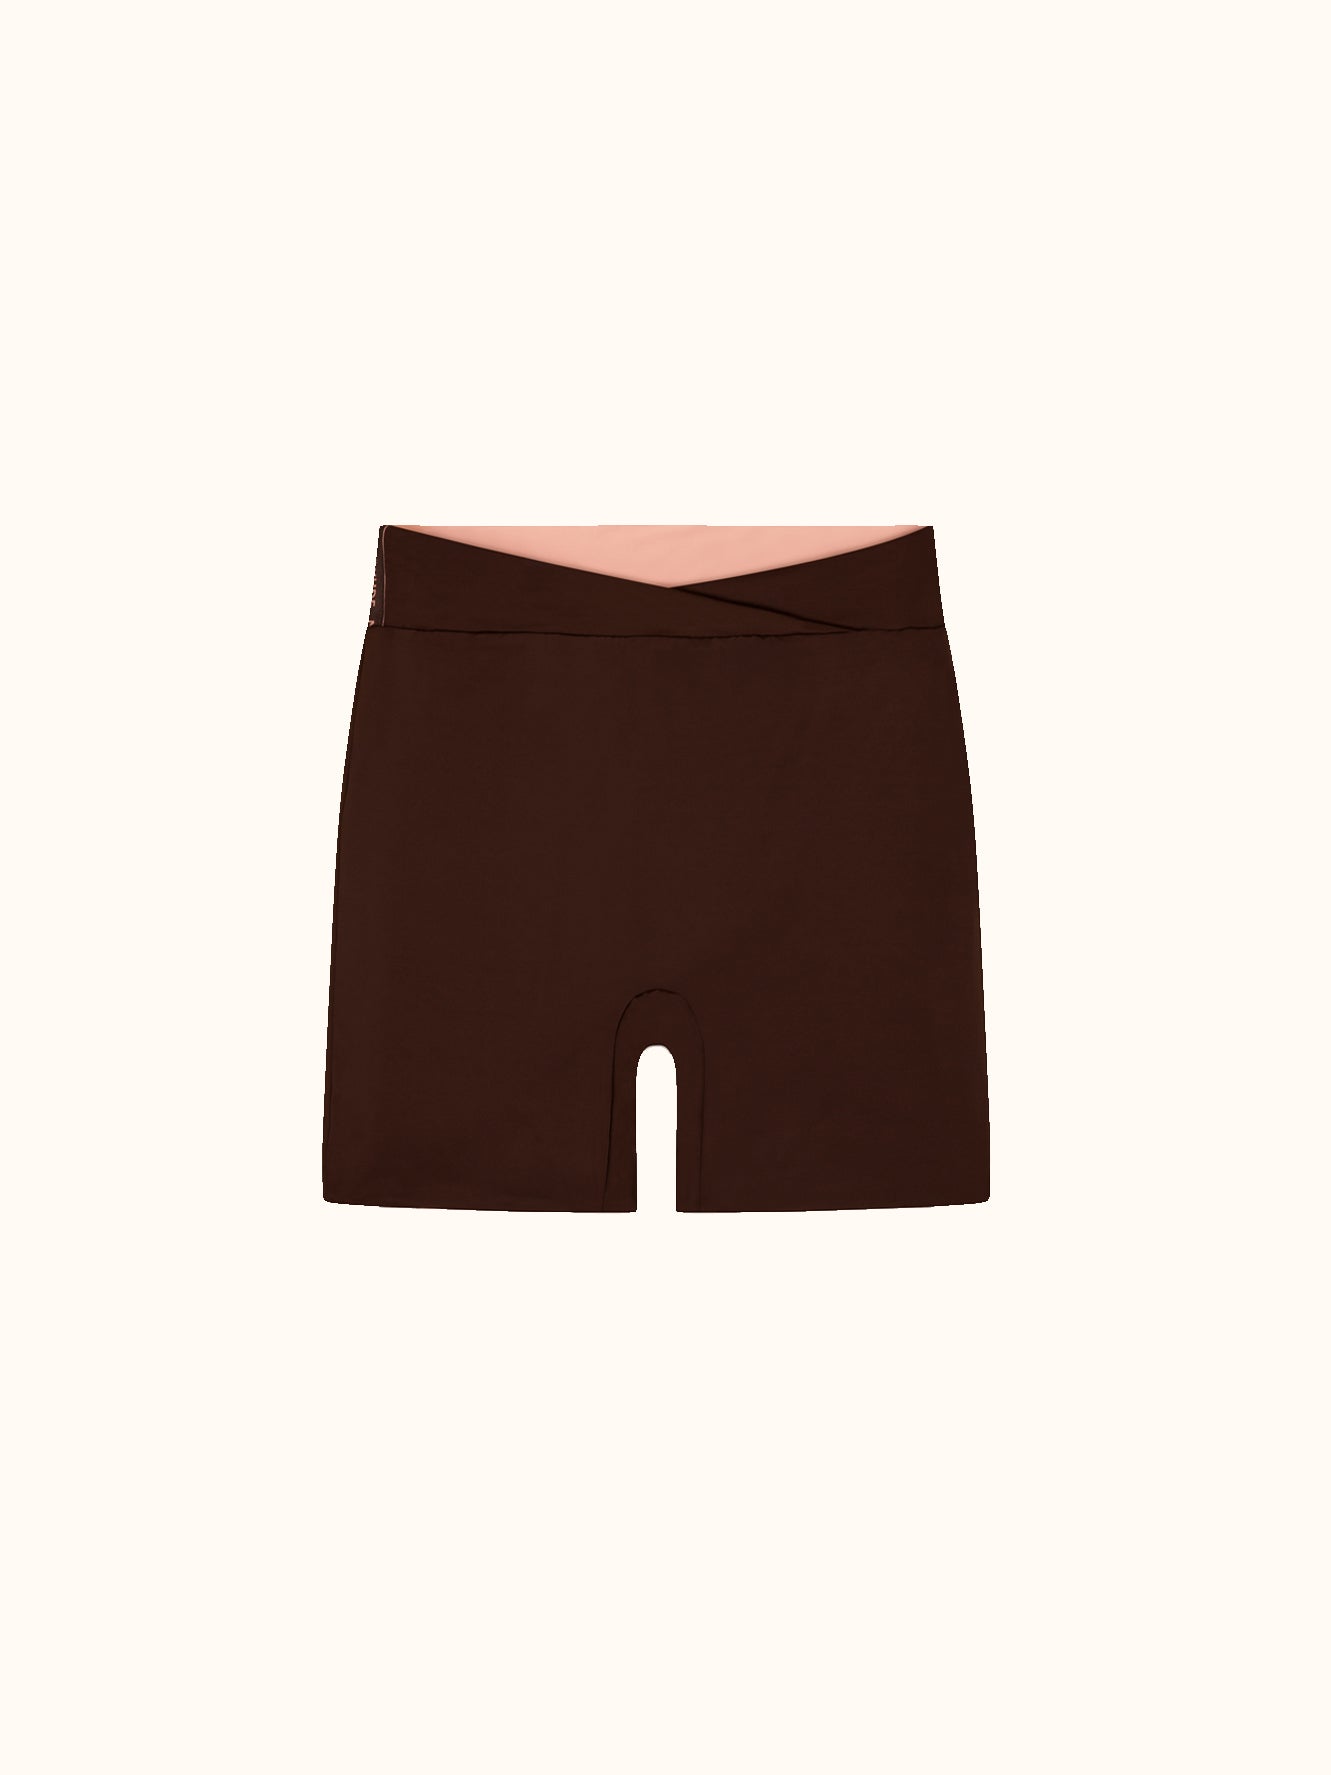 Activewear Shorts Set Blush/Brown